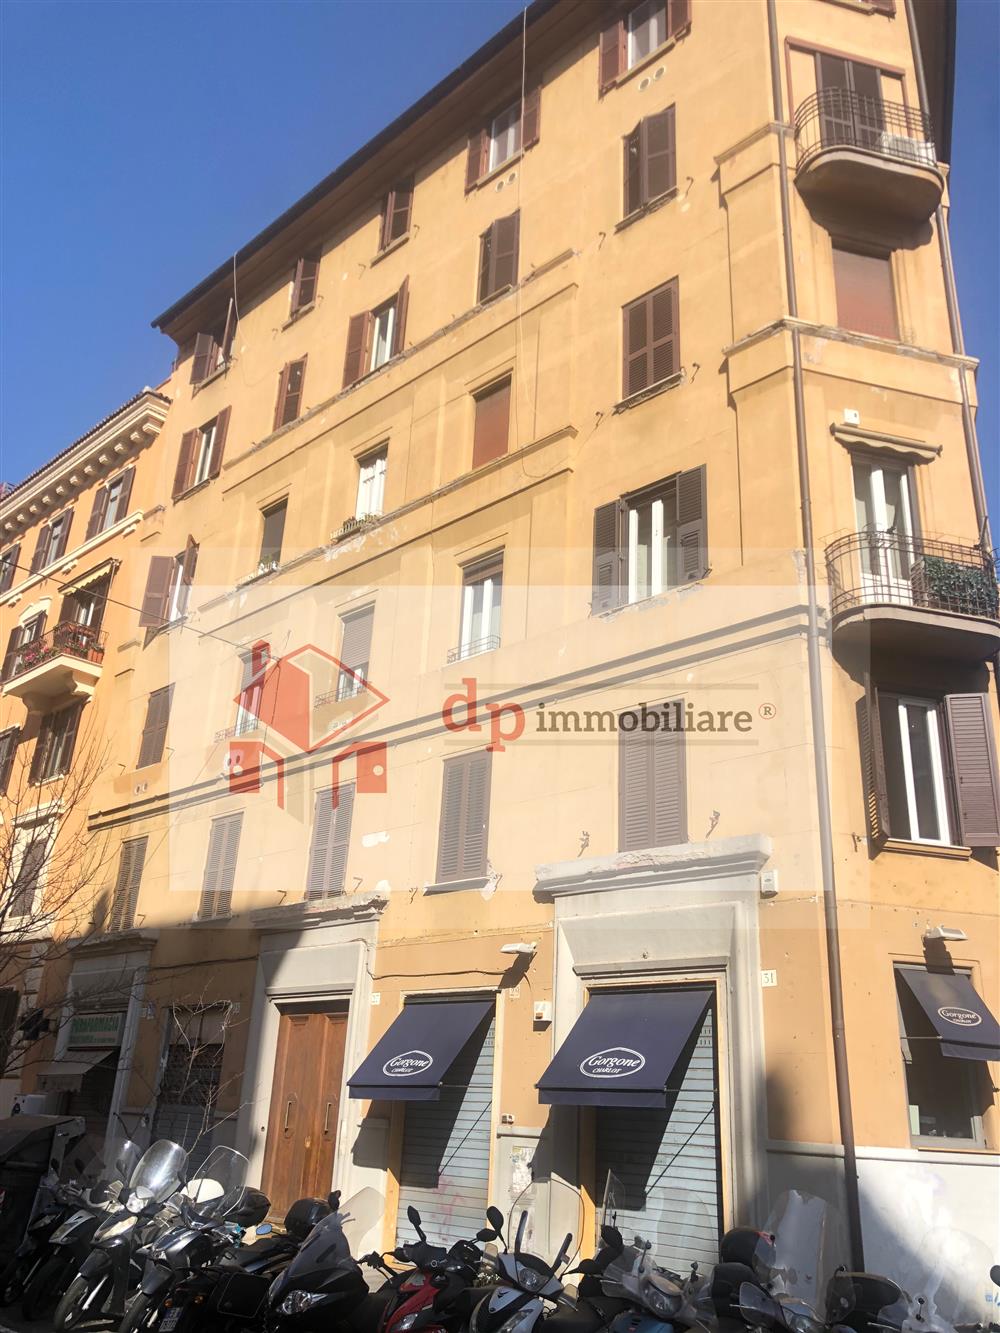 Affitti Case E Appartamenti Roma